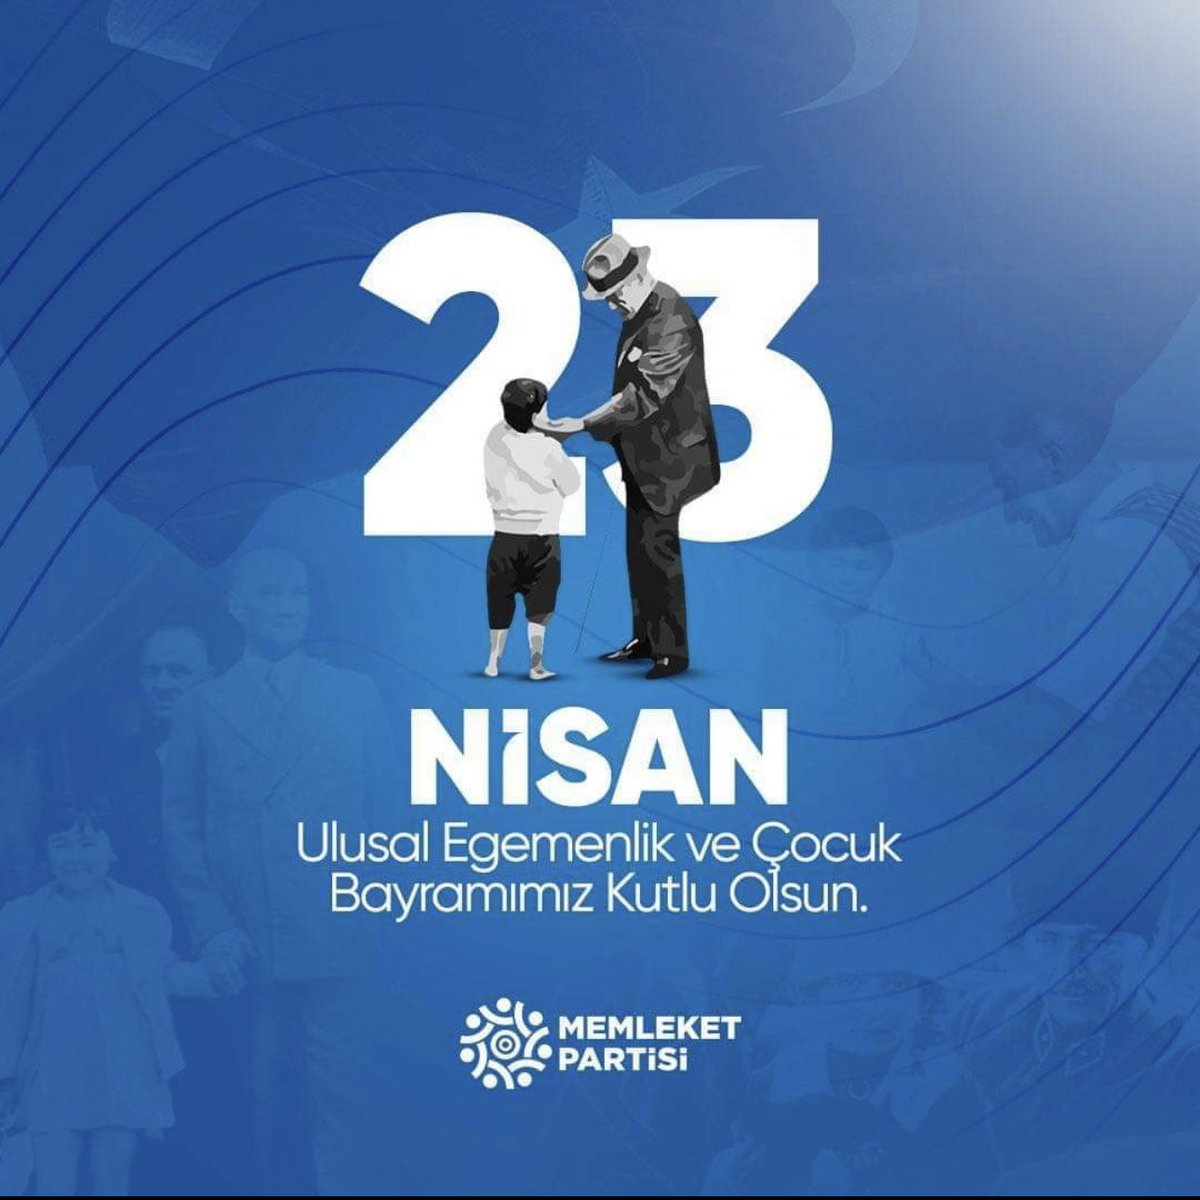 Türkiye Büyük Millet Meclisinin açılışının 104. yılı ve 23 Nisan 1924’ten bu yana bayram olarak kutladığımız, 23 Nisan 1929’dan bu yana da adı bugün ki halini alan Ulusal Egemenlik ve Çocuk Bayramımız kutlu olsun. Geleceğimizsiniz. 🧿🇹🇷 @vekilince @MemleketimParti #23Nisan1920